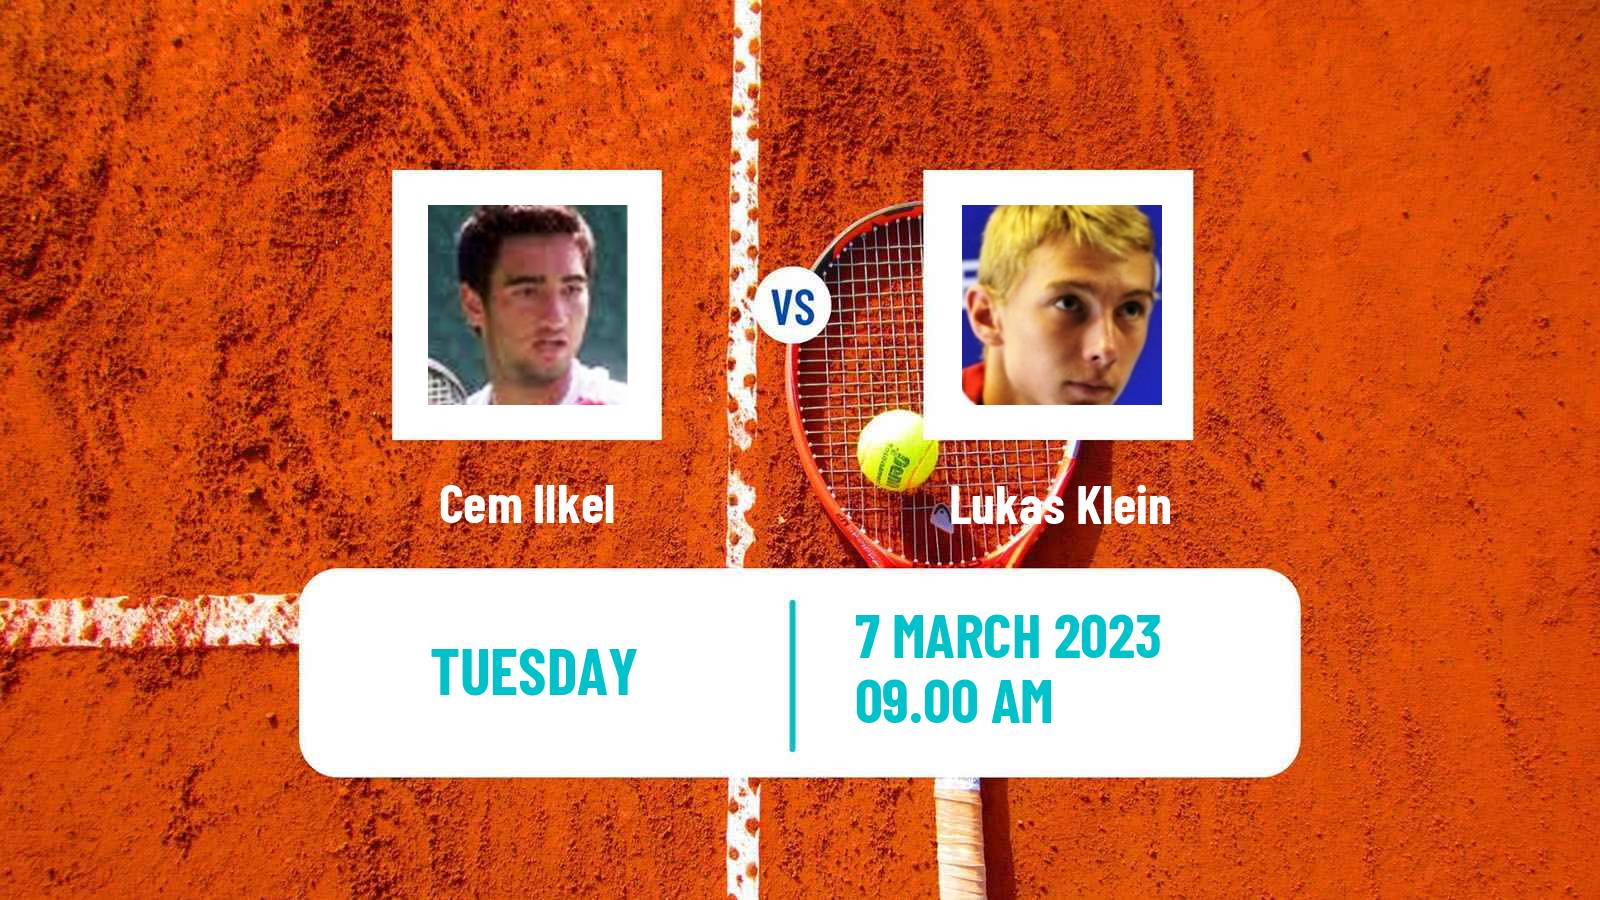 Tennis ATP Challenger Cem Ilkel - Lukas Klein